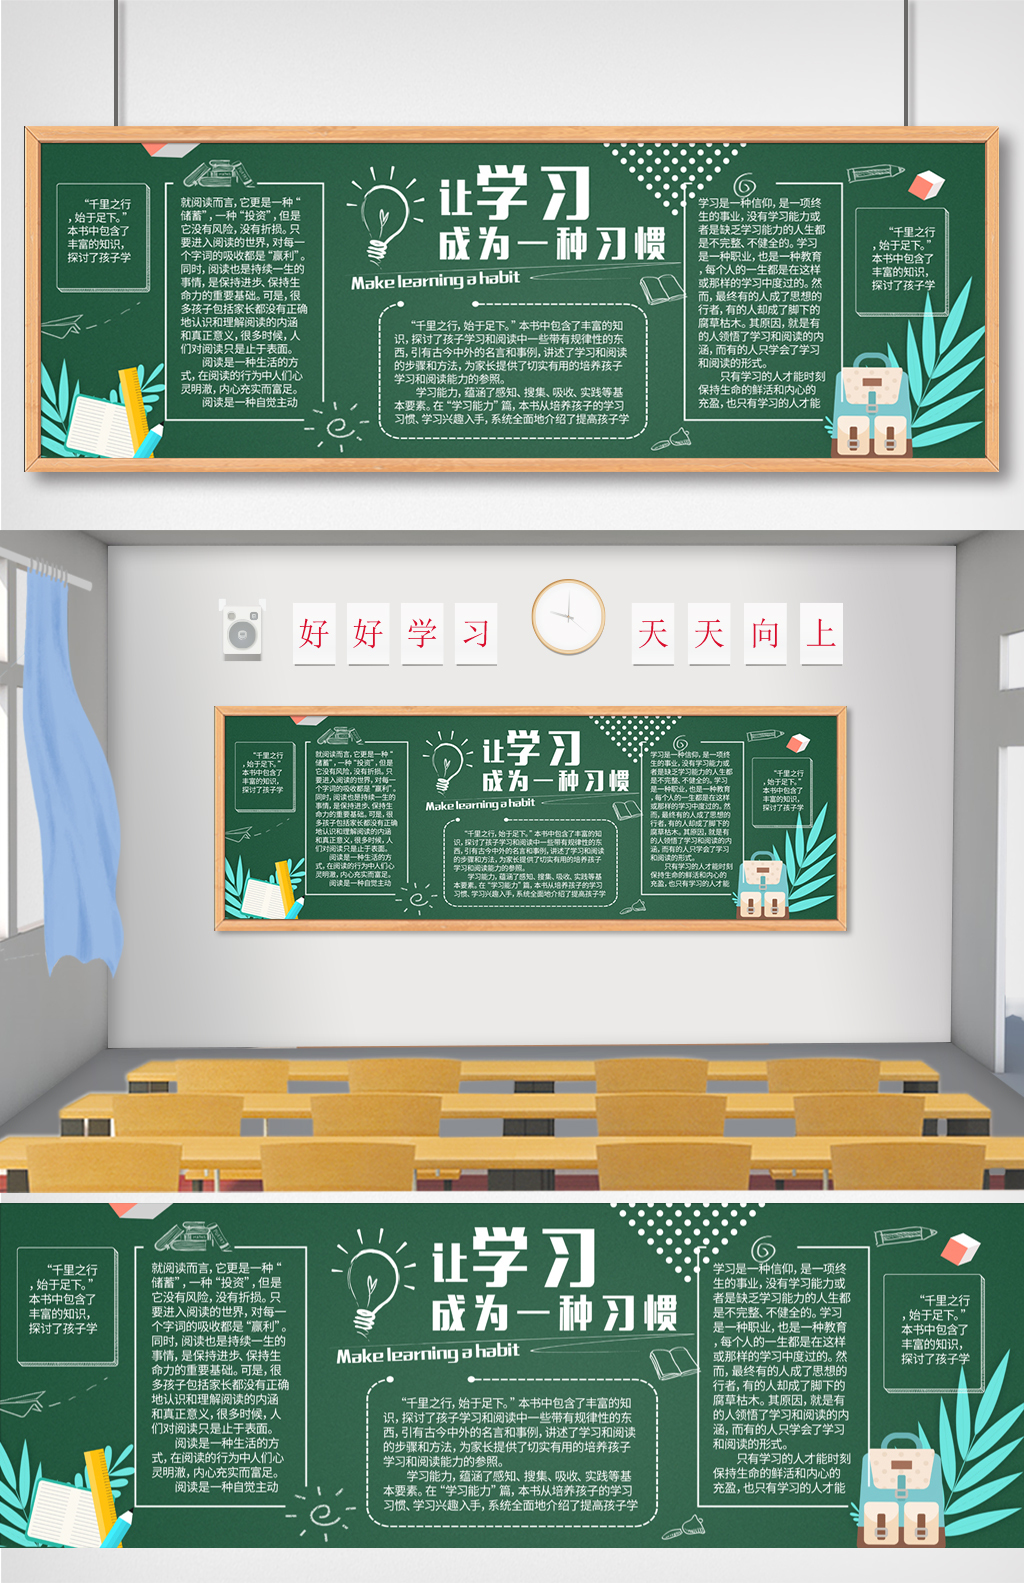 [107中] “感恩教师”系列活动之一：各班刊出黑板报庆祝教师节--郑州校园网